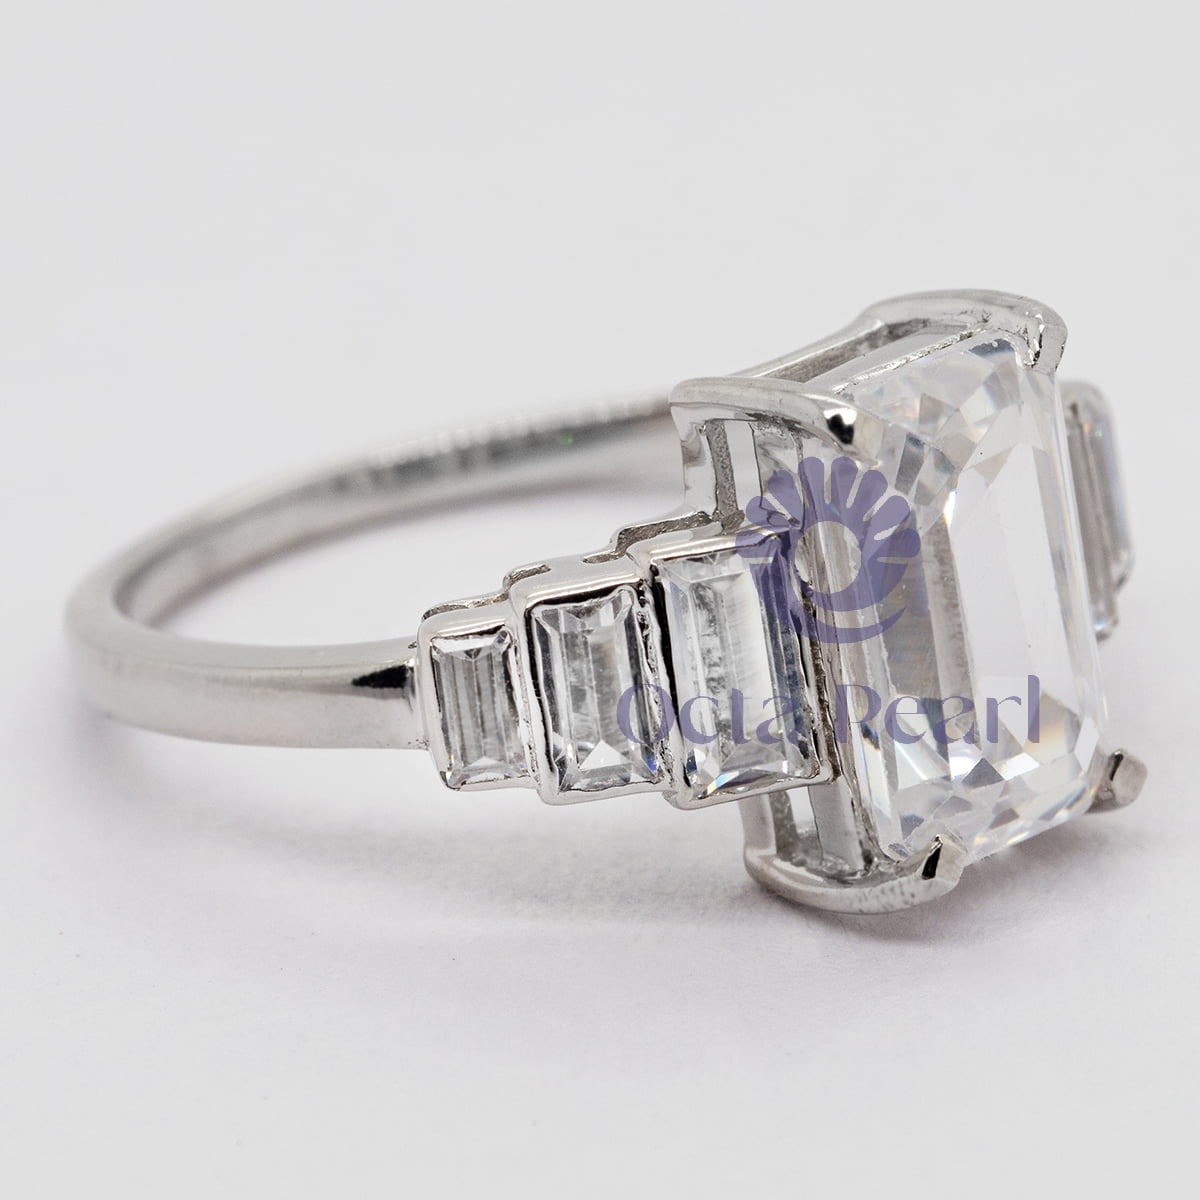 5-Stone Wedding Ring in Emerald-Cut CZ